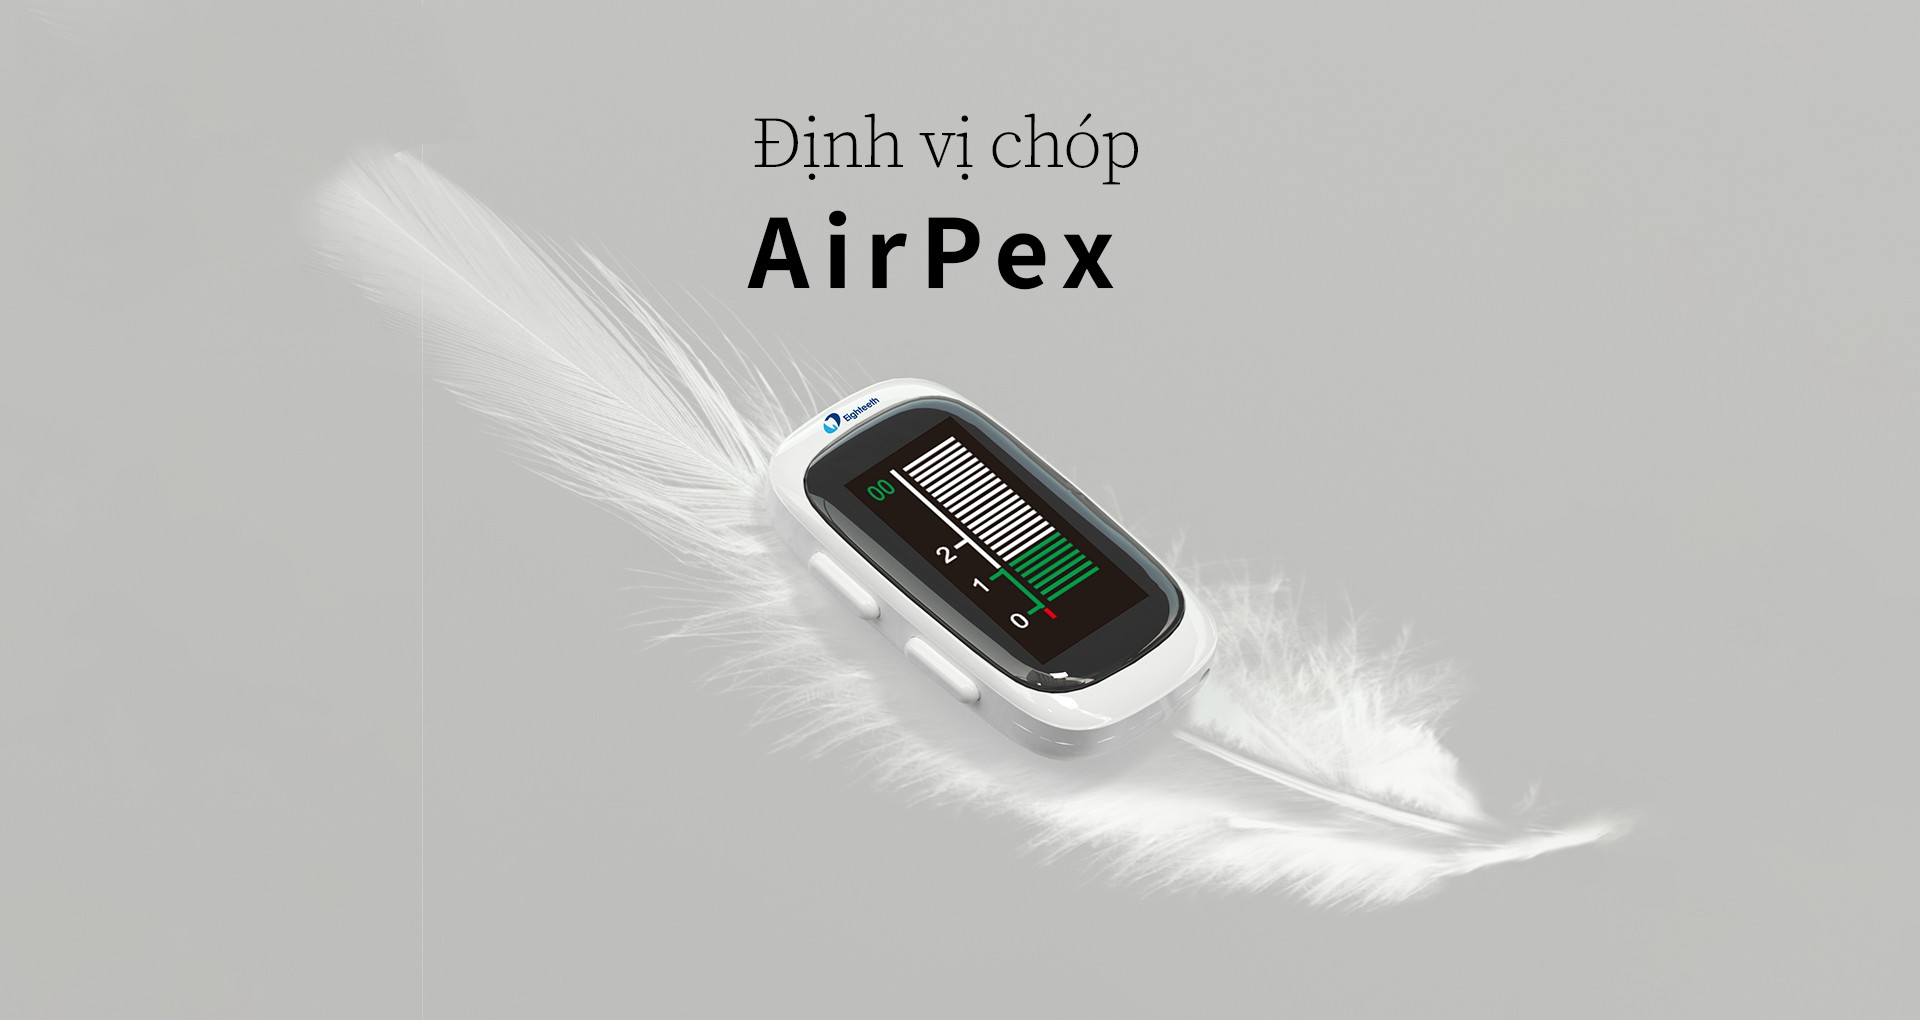 Định vị chóp AirPex0